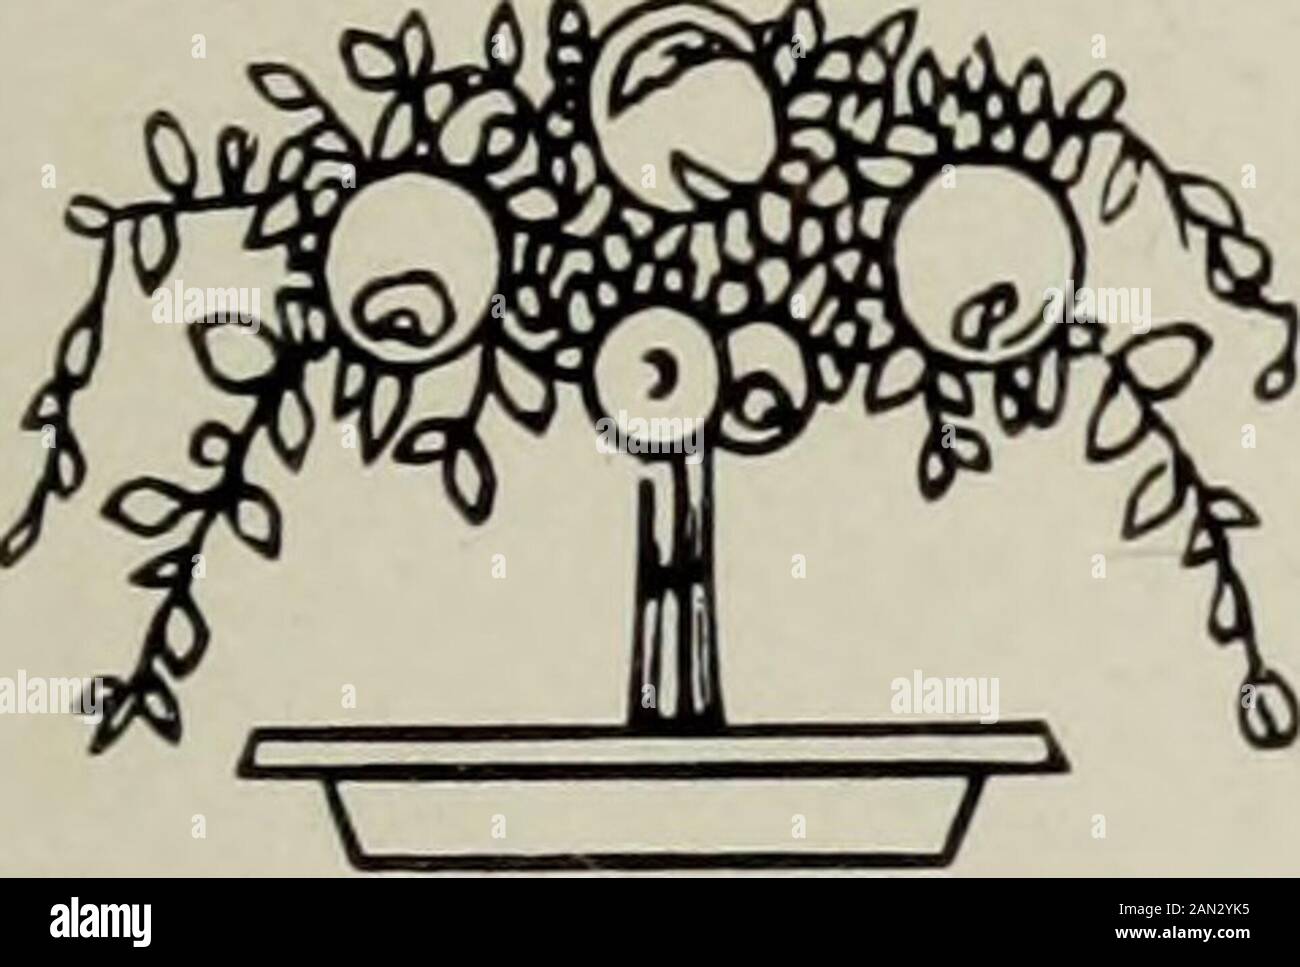 El Reptoniano de 1917: Una publicación anual representativa del trabajo en el curso profesional de jardinería paisajística en la Universidad de Illinois . Augustine & COMPANY, NurserymenNORMAL, ILLINOIS THOMAS B. MEEHAN & CO. Al por mayor un [DRESHER de urserymen, PA.Nos Especializamos en Árboles ornamentales, arbustos, plantas de Evergreensand Hardy, y disfrutamos de la confianza y el negocio de LandscapeArchitects a través de los Estados Unidos. 225 oAcres dedicados a la producción de la mejor calidad de la población ornamental de viveros.. Frutas, SOMBRA, ORNAMENTALES, PERENNES, SVERGREENS, arbustos, ere. TheJewel CIS[ursery Company INC Foto de stock